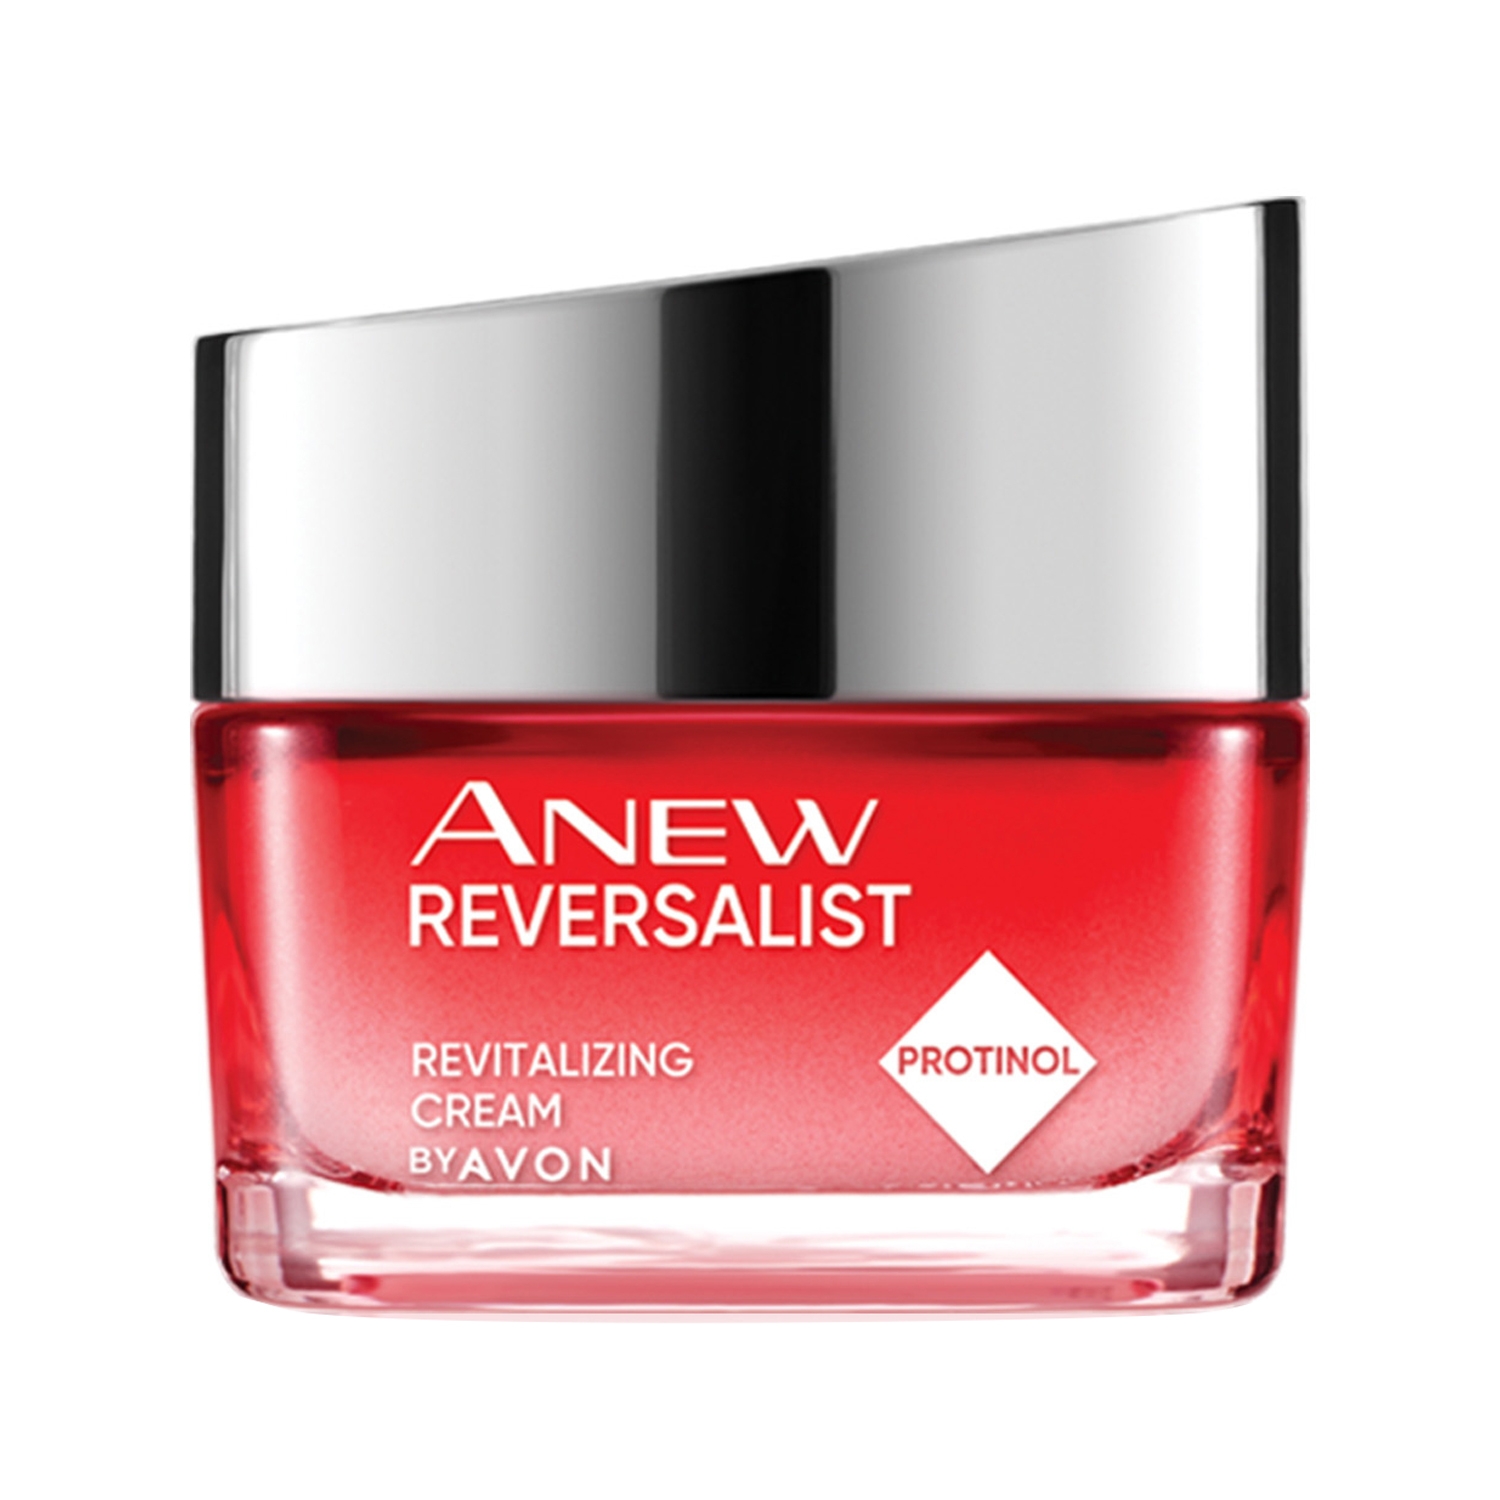 Avon Anew Reversalist Night Cream (50g)